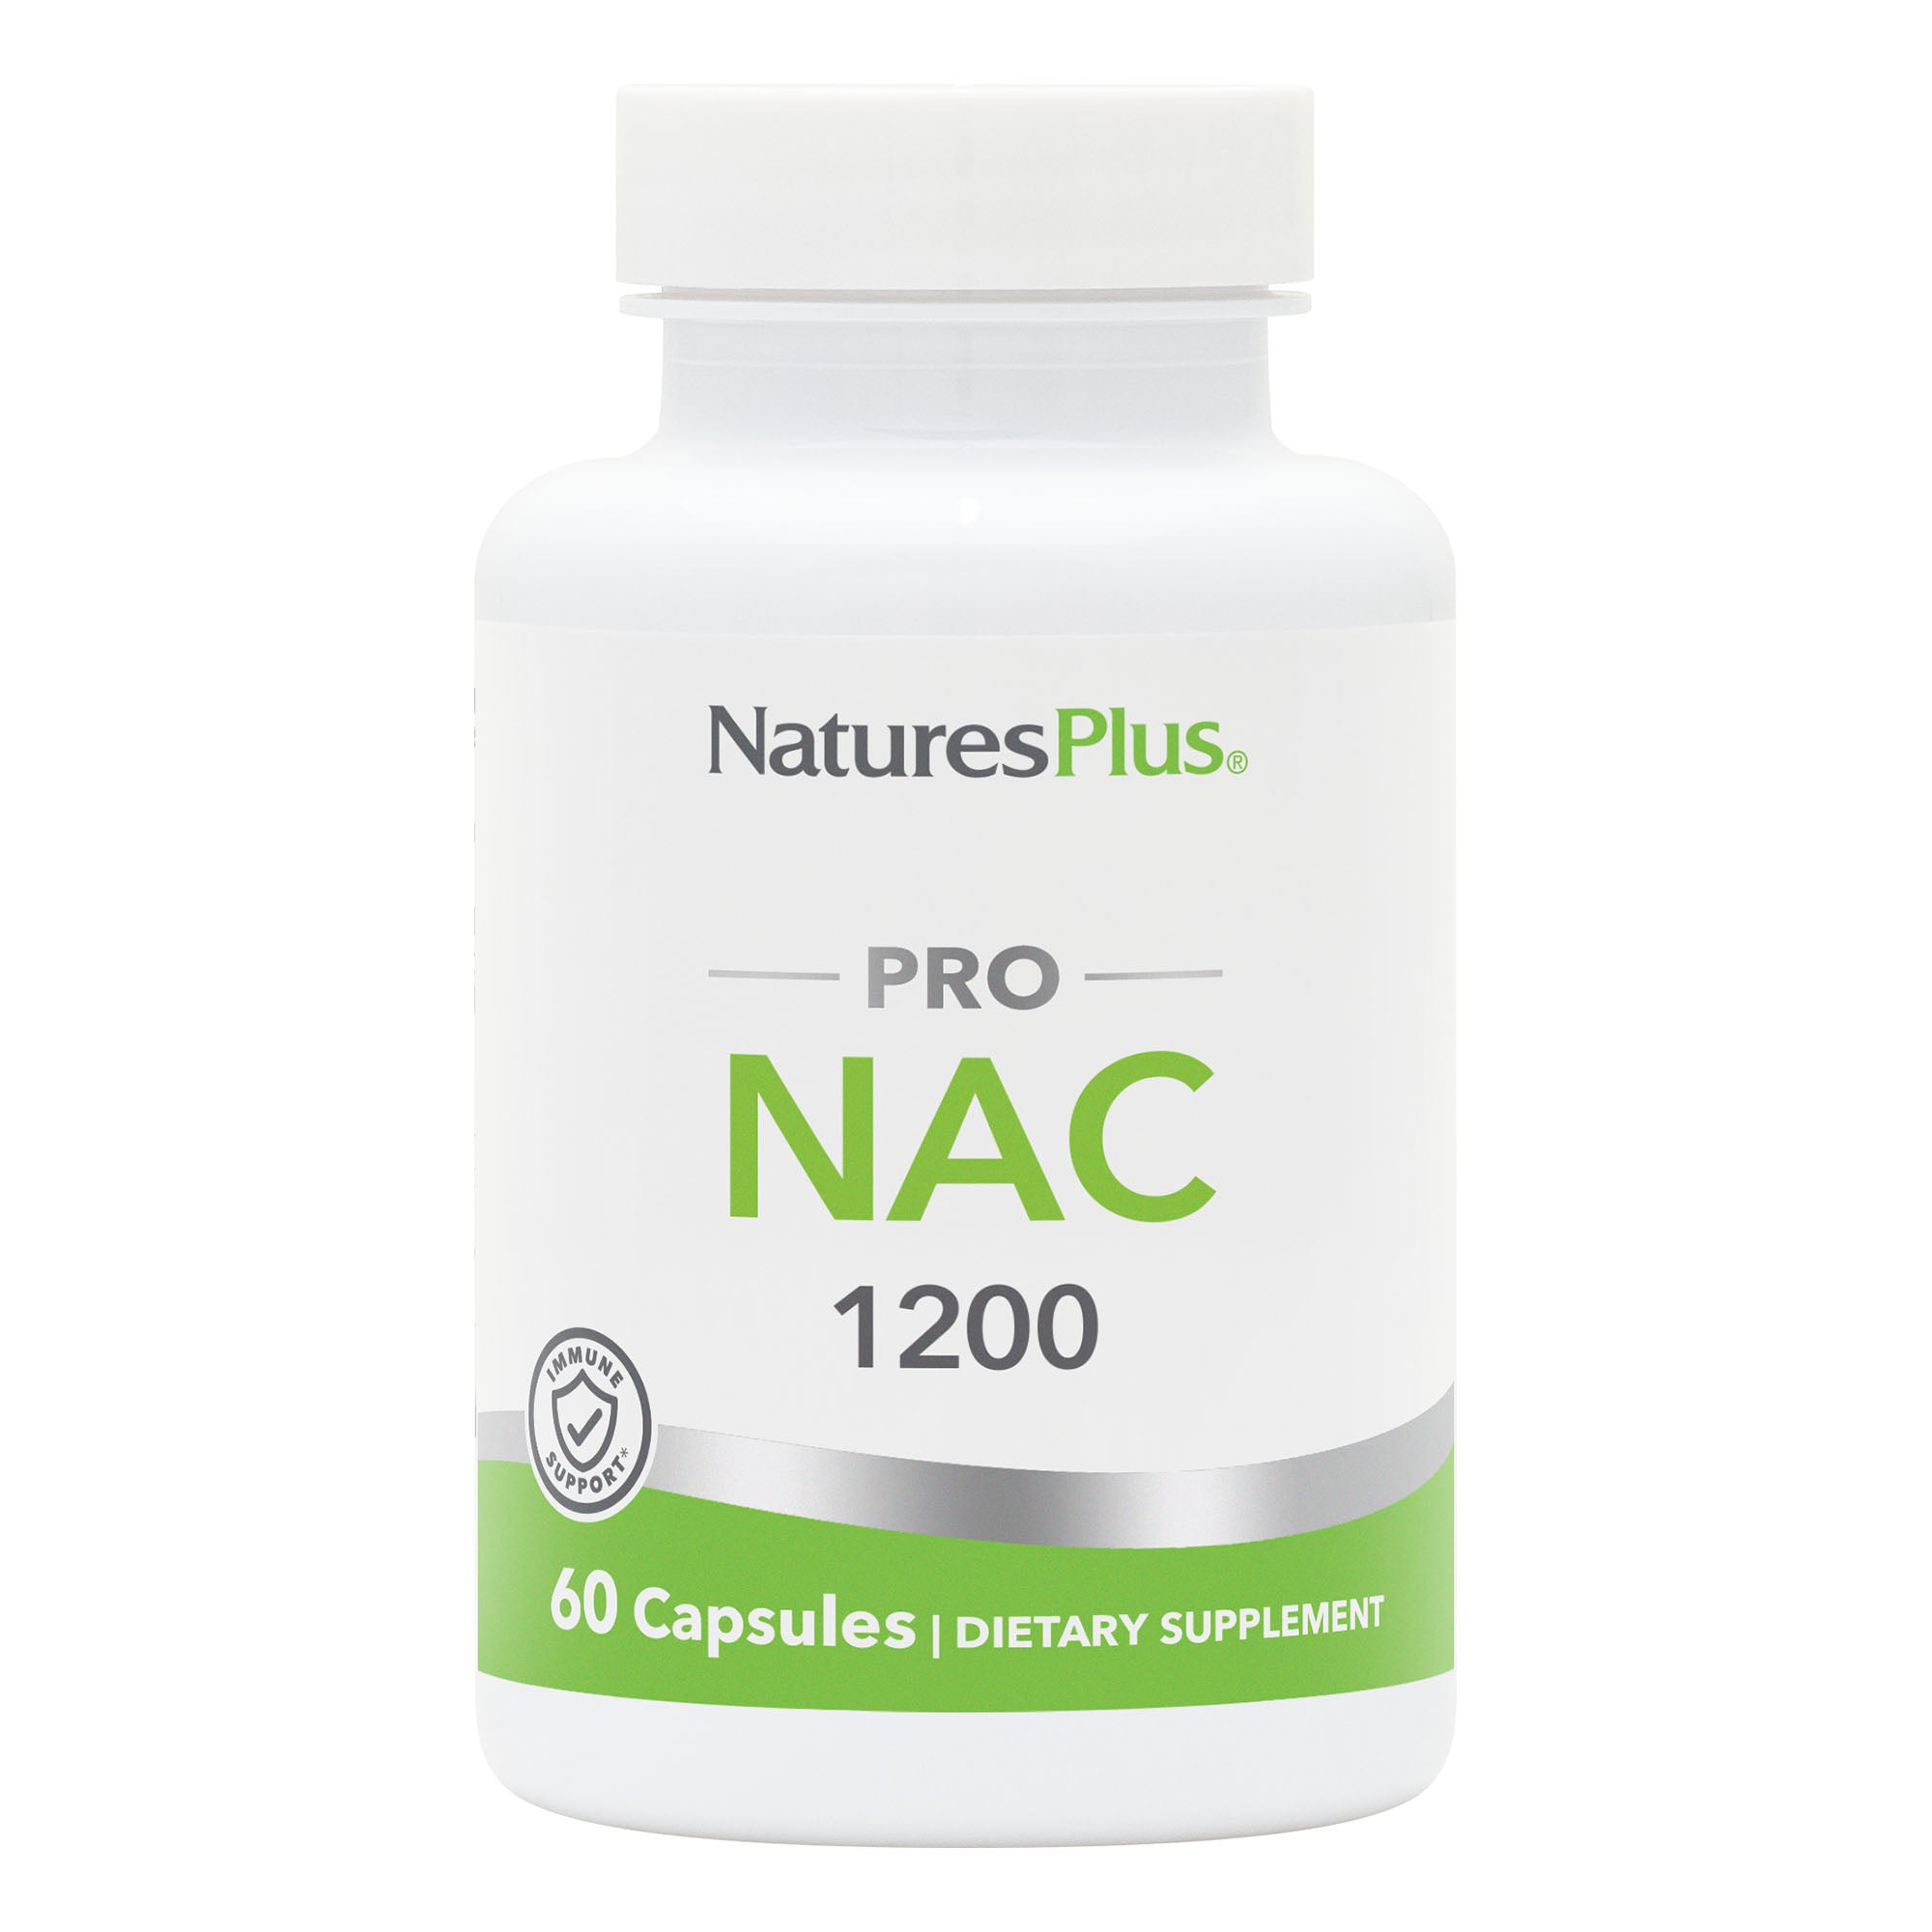 NaturesPlus PRO NAC 1200 Capsules